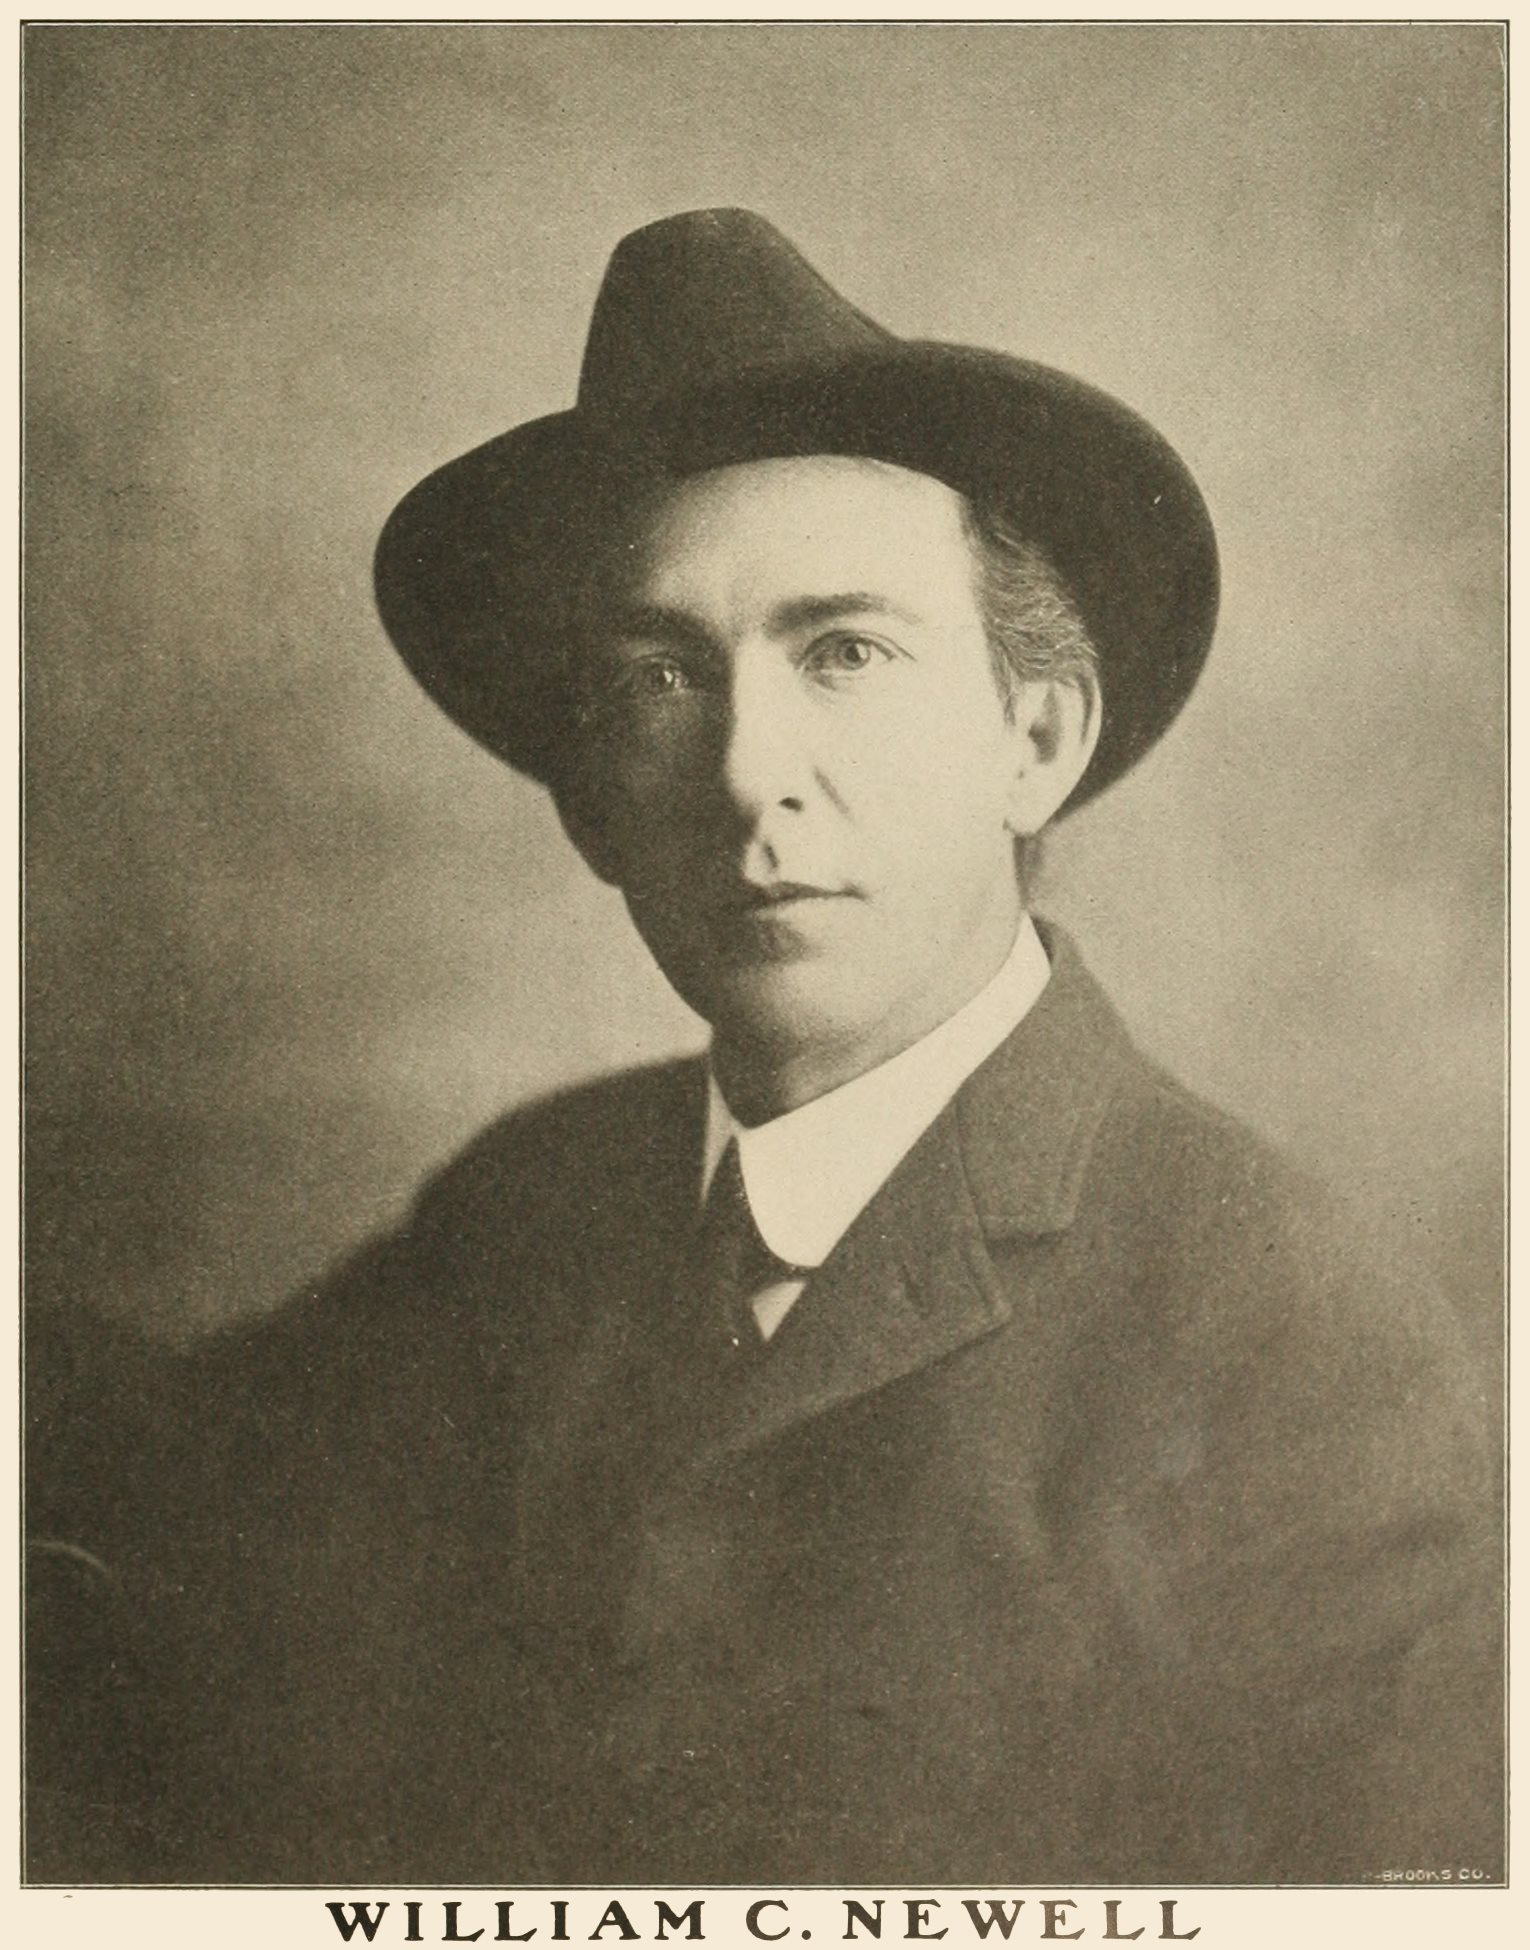 William C. Newell